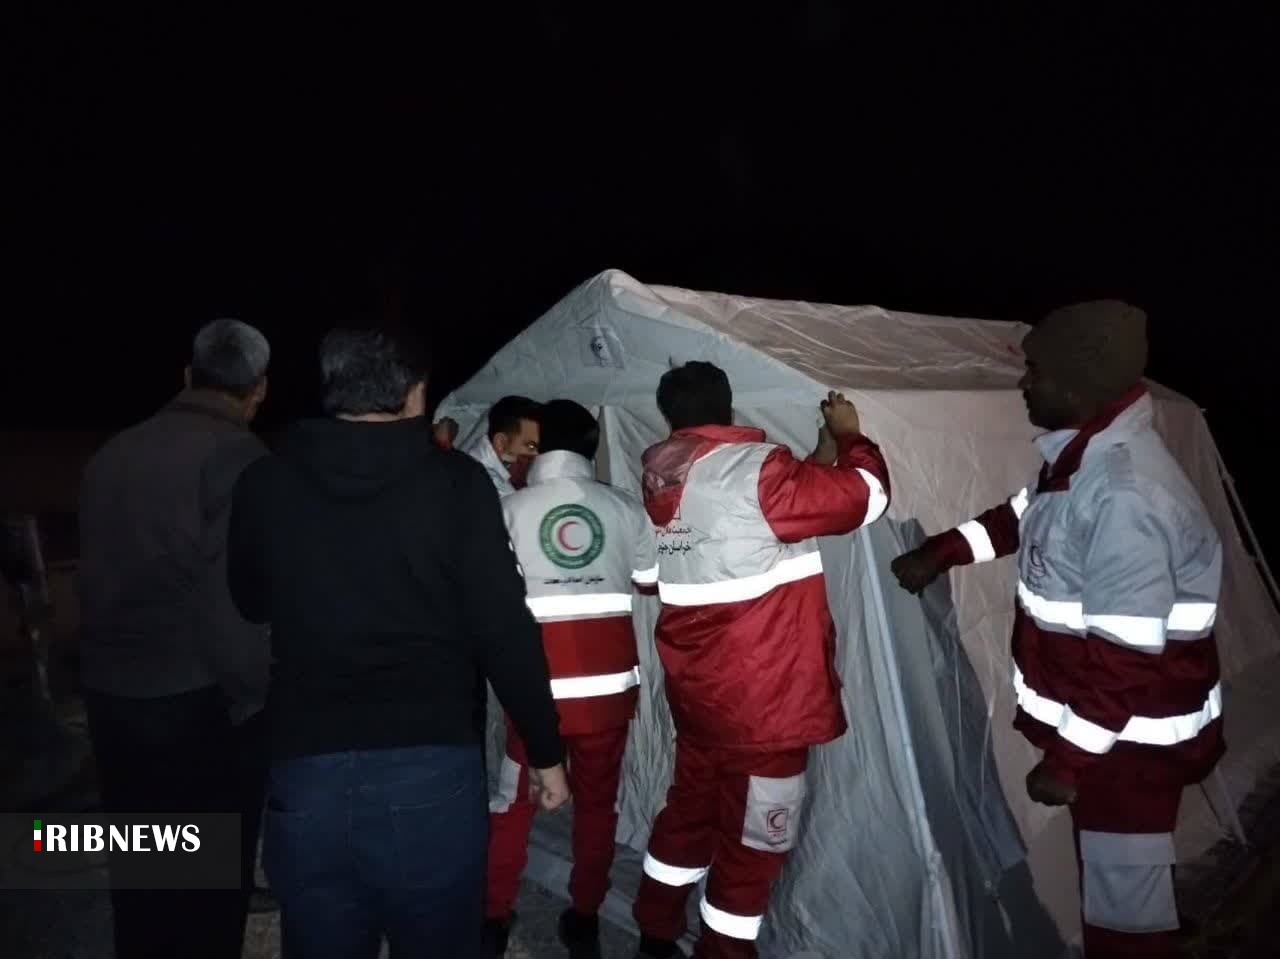 حضور چهار تیم ارزیاب امدادی در منطقه زلزله بشرویه